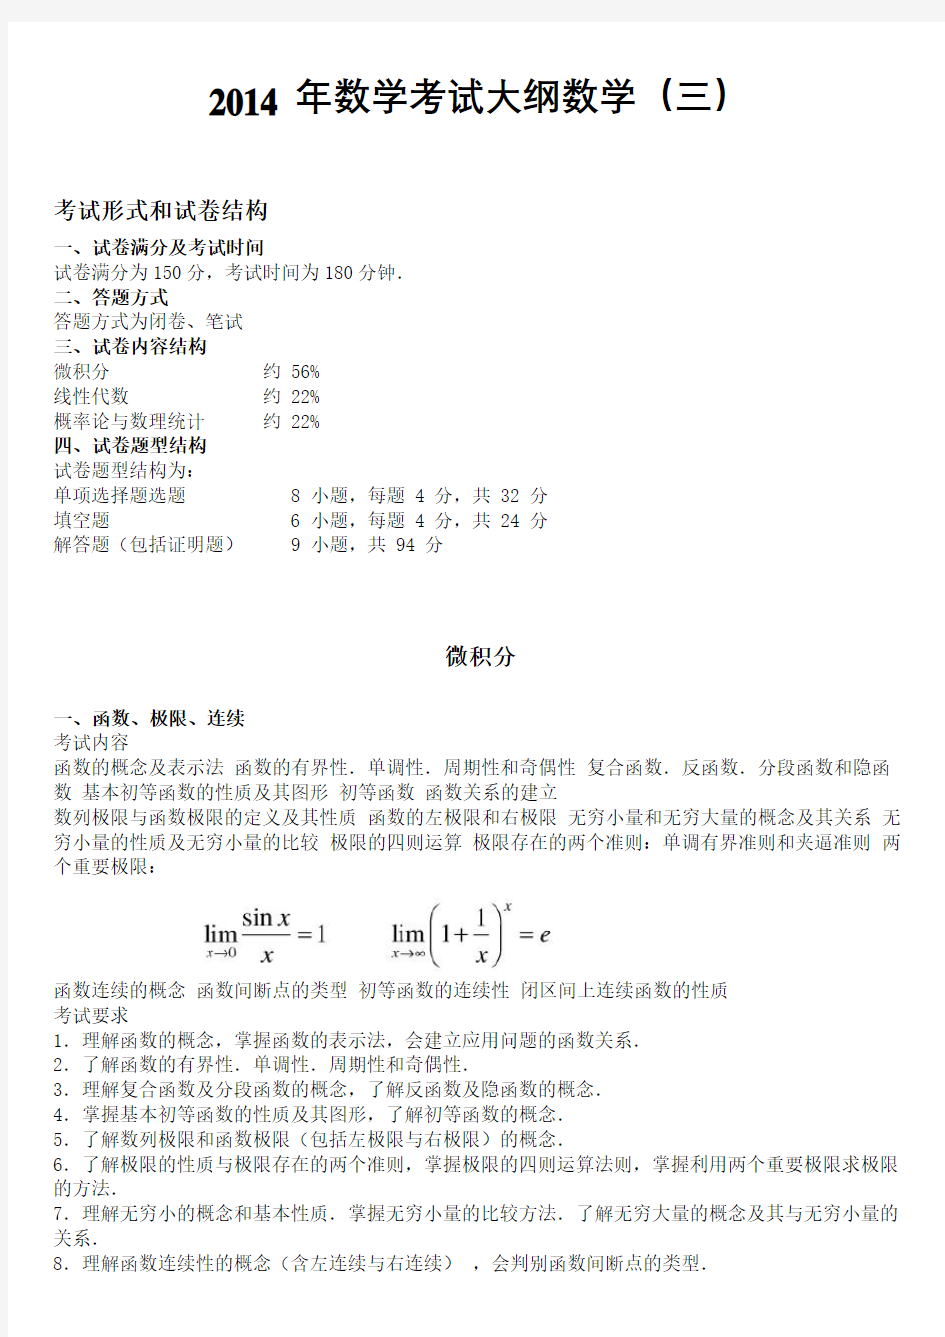 考研数学考试大纲完美打印版